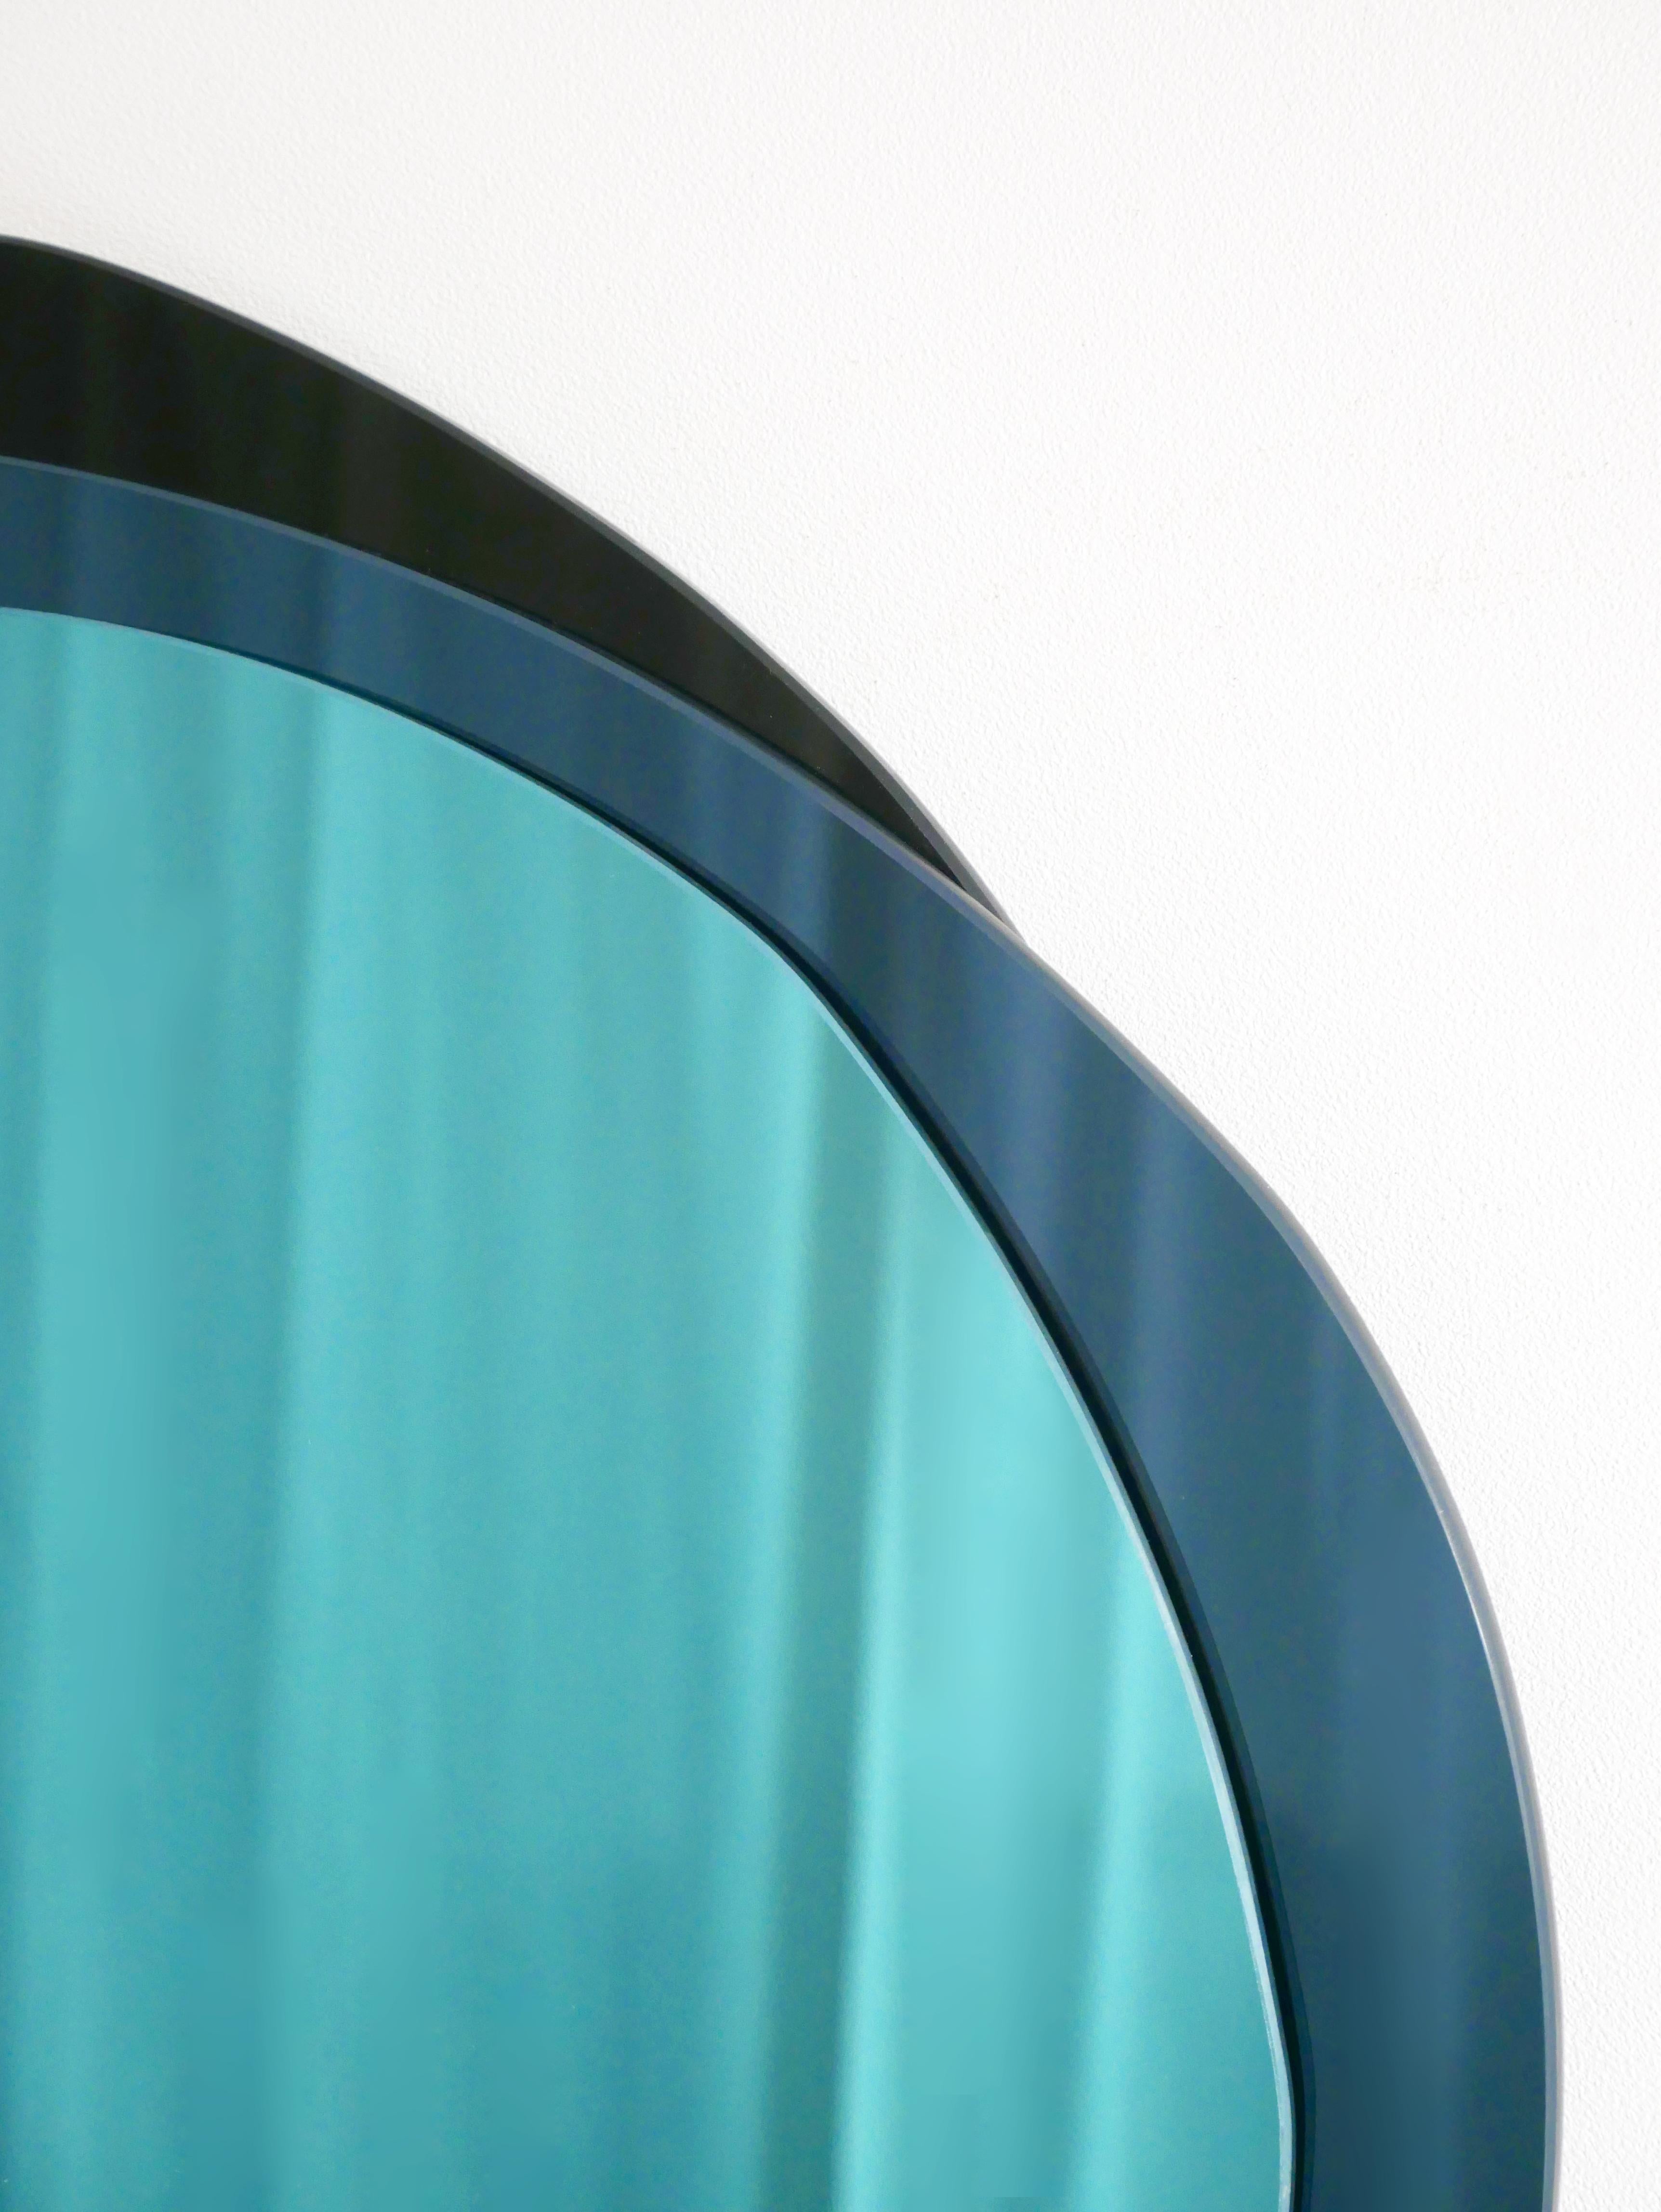 Lunar X-großer handgeformter Spiegel, Laurene Guarneri
Limitierte Ausgabe.
Handgefertigt.
MATERIALIEN: Himmelblau gefärbter Spiegel, dunkelblau gefärbter Spiegel, dunkel gefärbter Spiegel
Abmessungen: 100 x 100 cm

Laurène Guarneri ist eine in